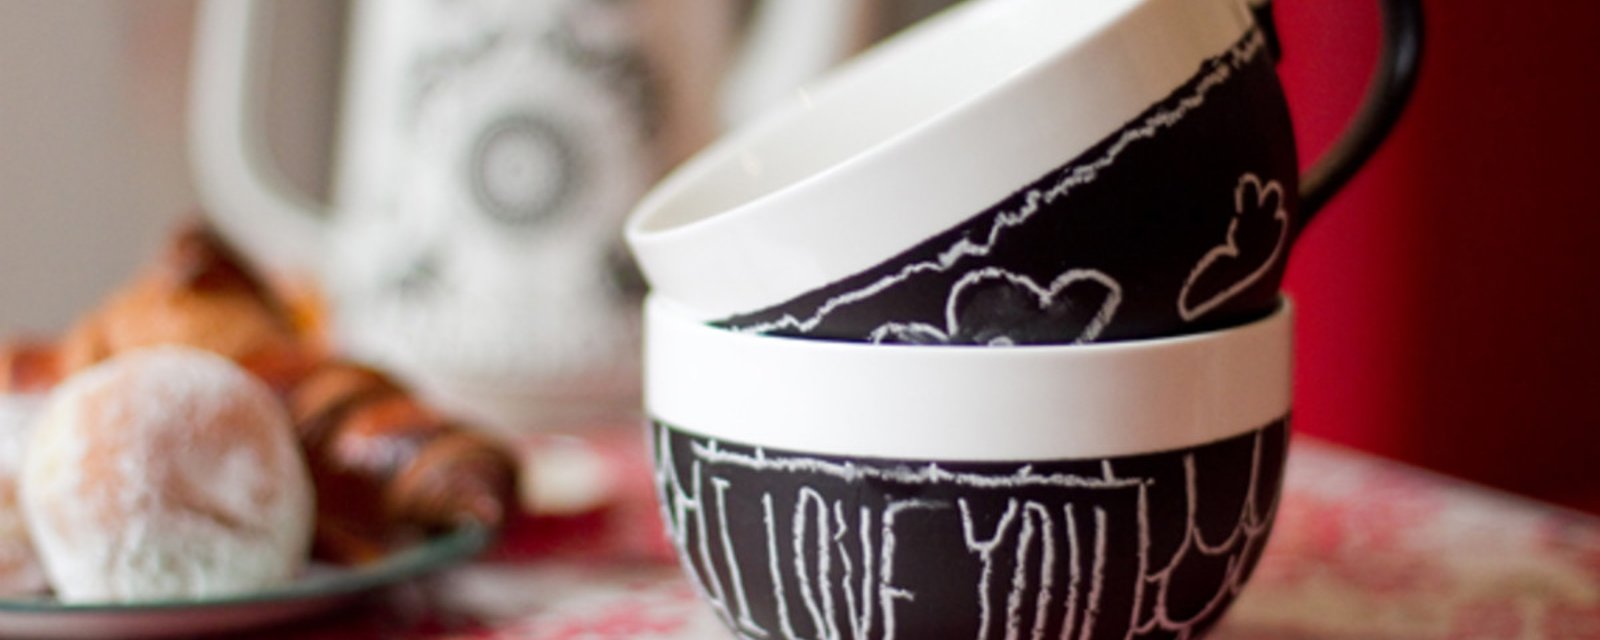 Transformez une tasse ou un bol à café en cadeau génial juste à temps pour la St-Valentin!